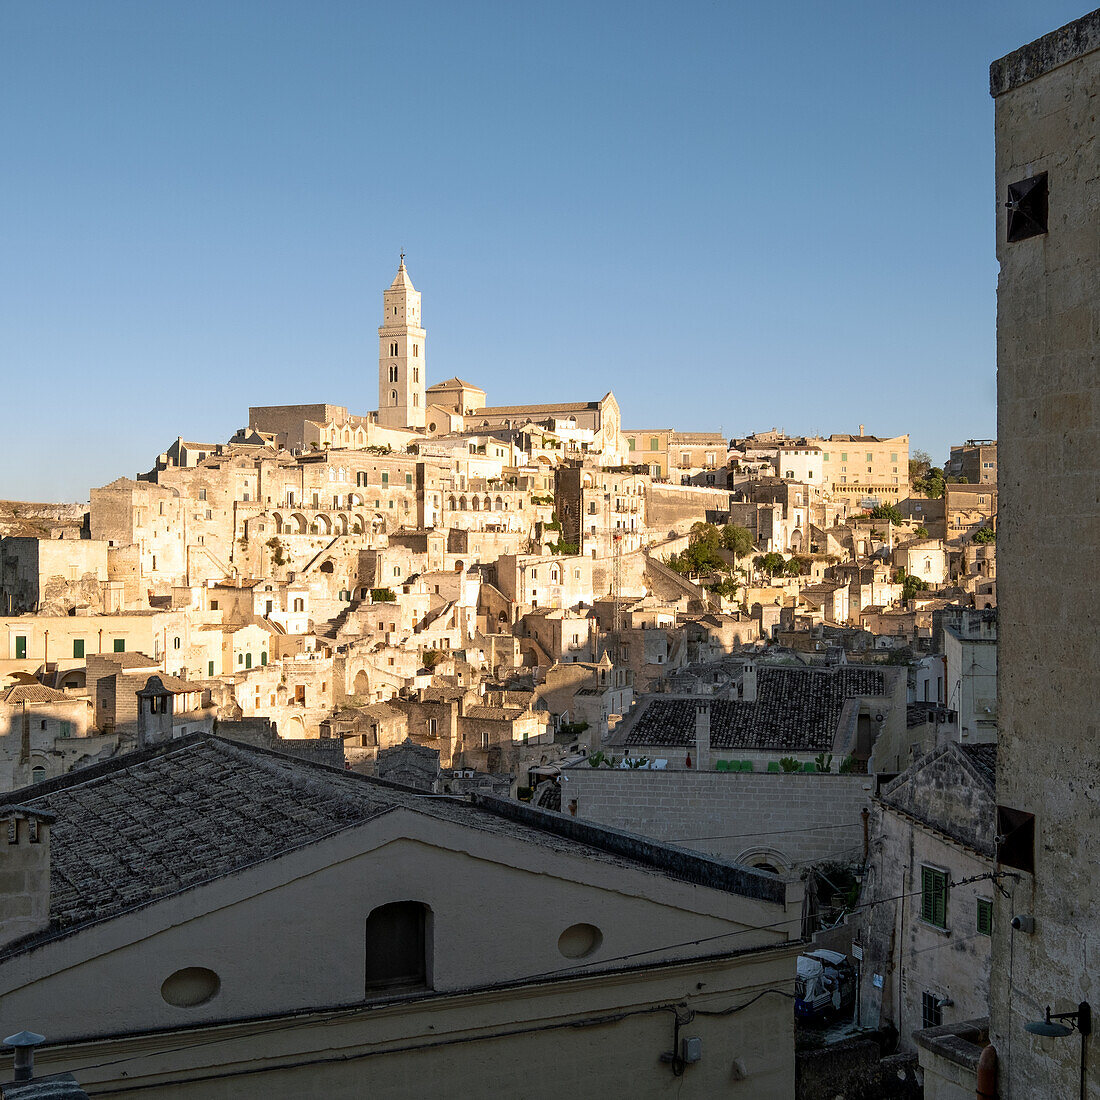 Italien, Basilicata, Matera, Blick auf die mittelalterliche Stadt